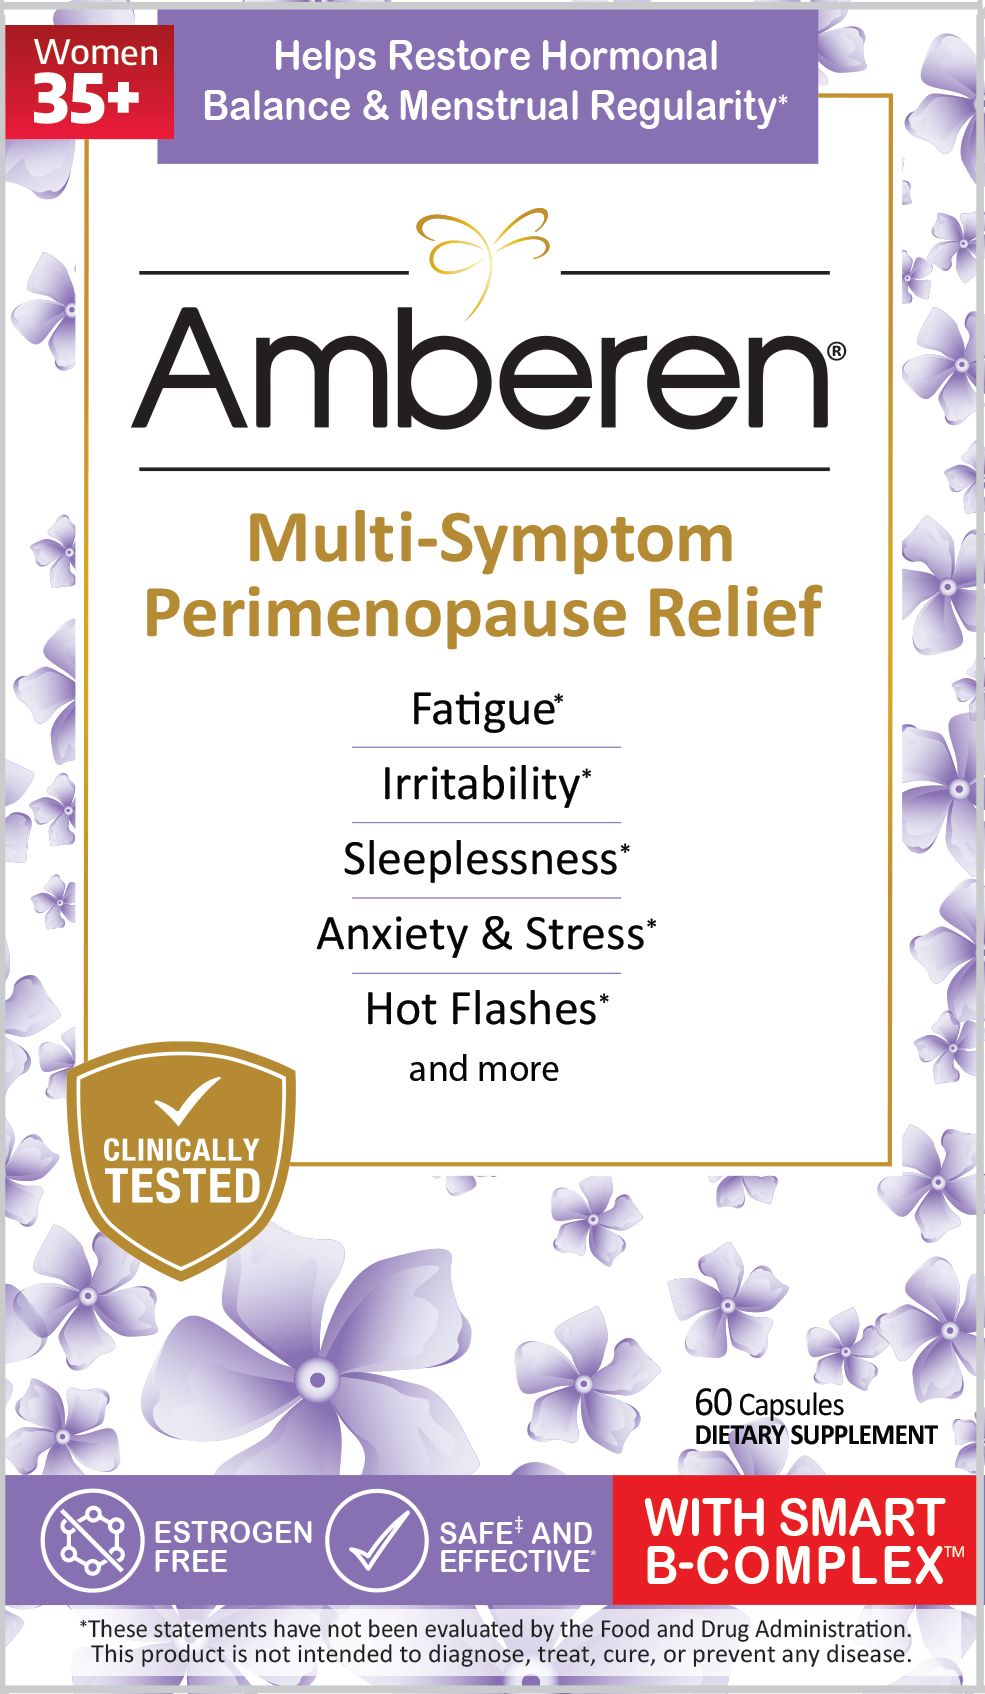 Amberen Muti-Symptom Perimenopause Relief 60 Capsules - 2 Pack